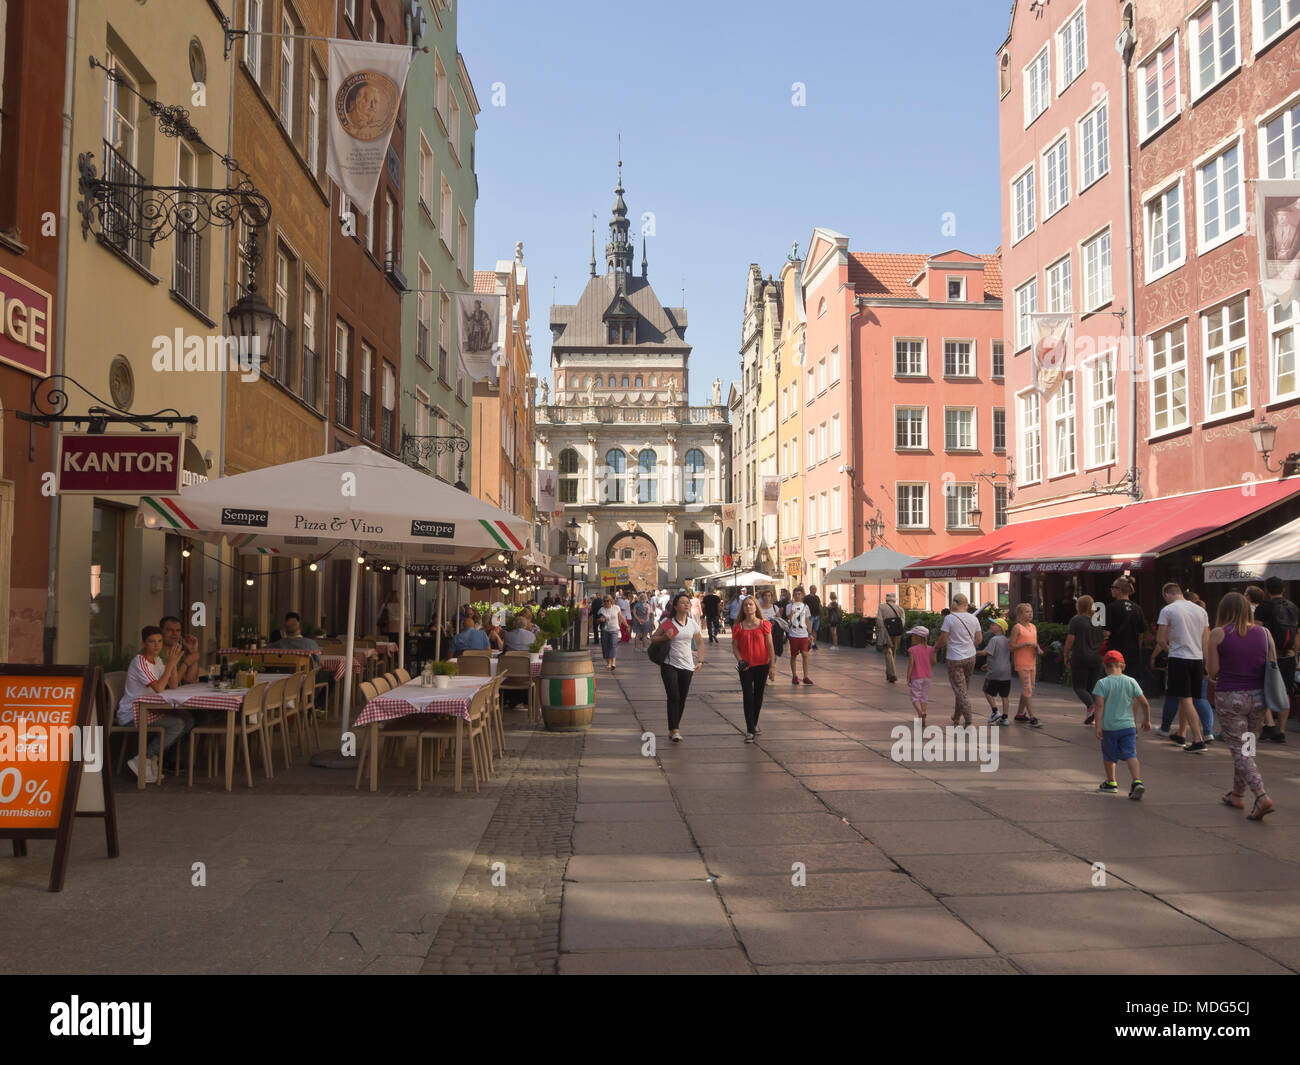 Se promener le long de l'une des rues sans voiture ou en visite dans un restaurant en plein air dans la principale ville de Gdansk en Pologne, sont populaires activités touristiques Banque D'Images